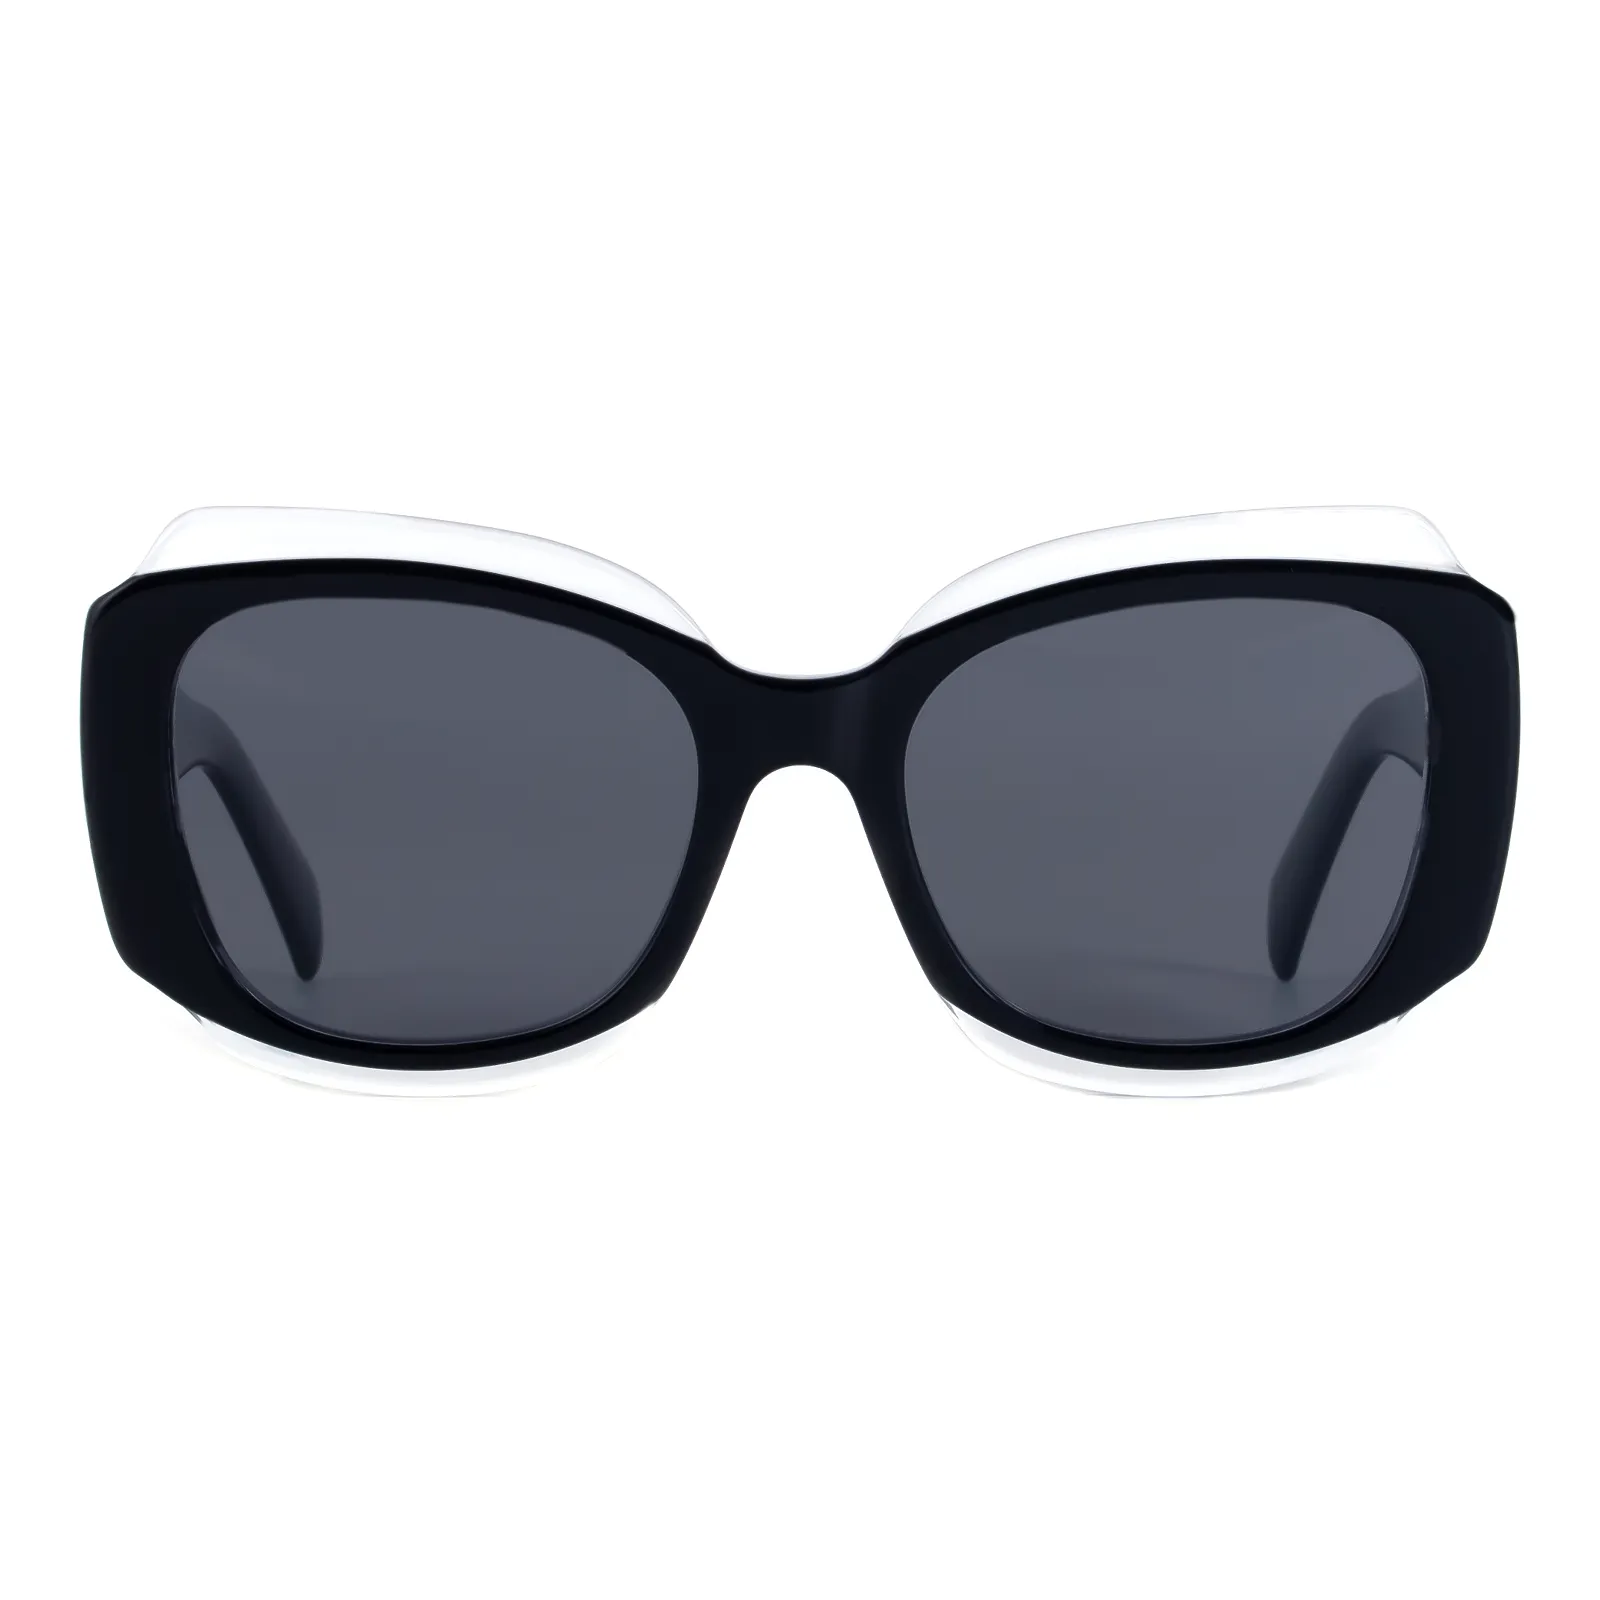 Rosemary - Square Black Sunglasses for Women